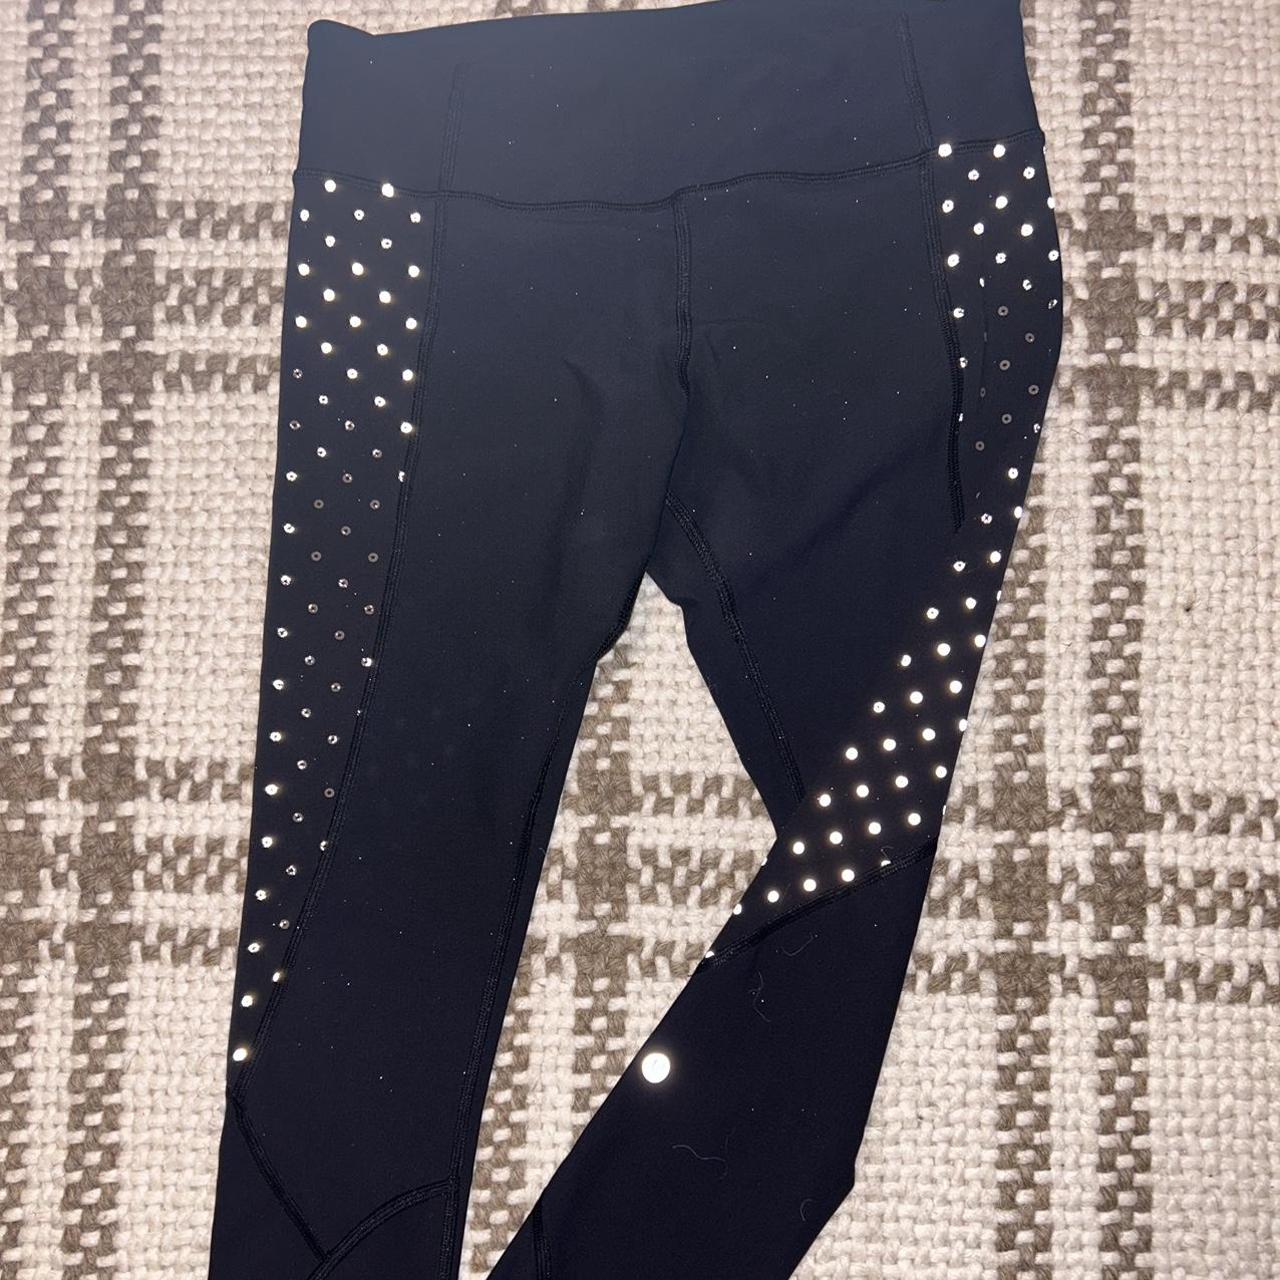 Lululemon black/polkadot leggings Size 10 - Depop